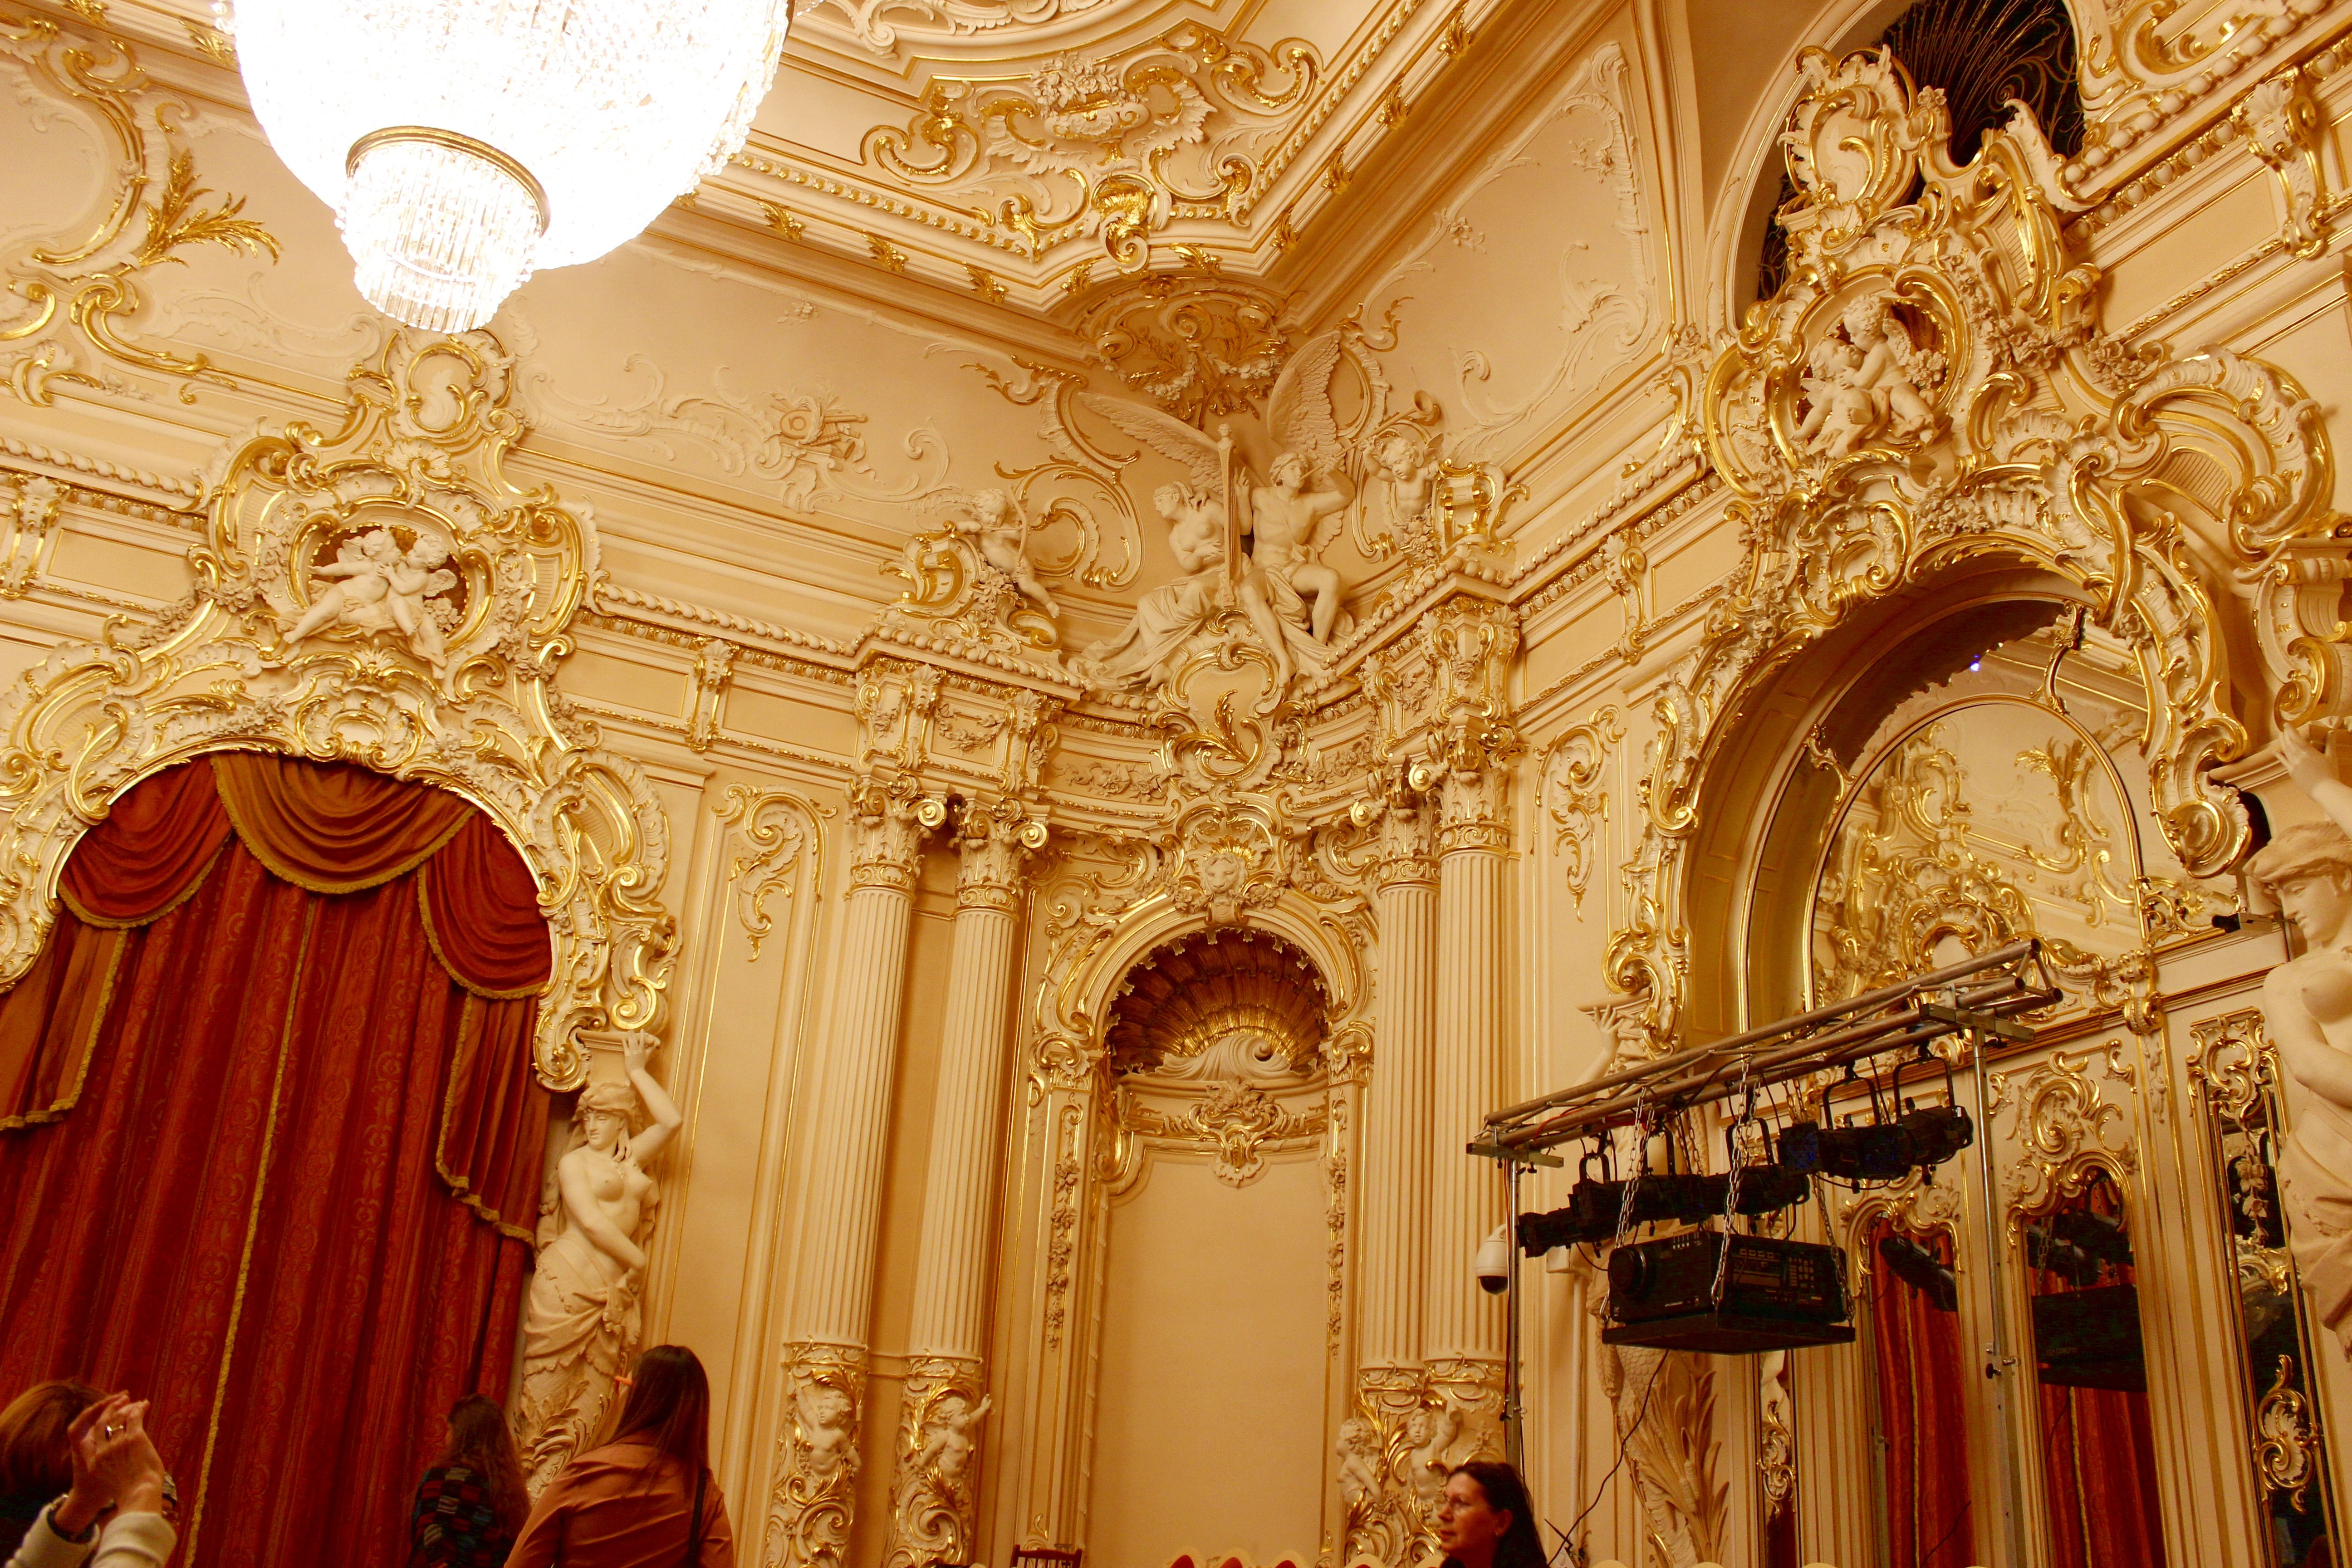 Театр санкт петербург опера